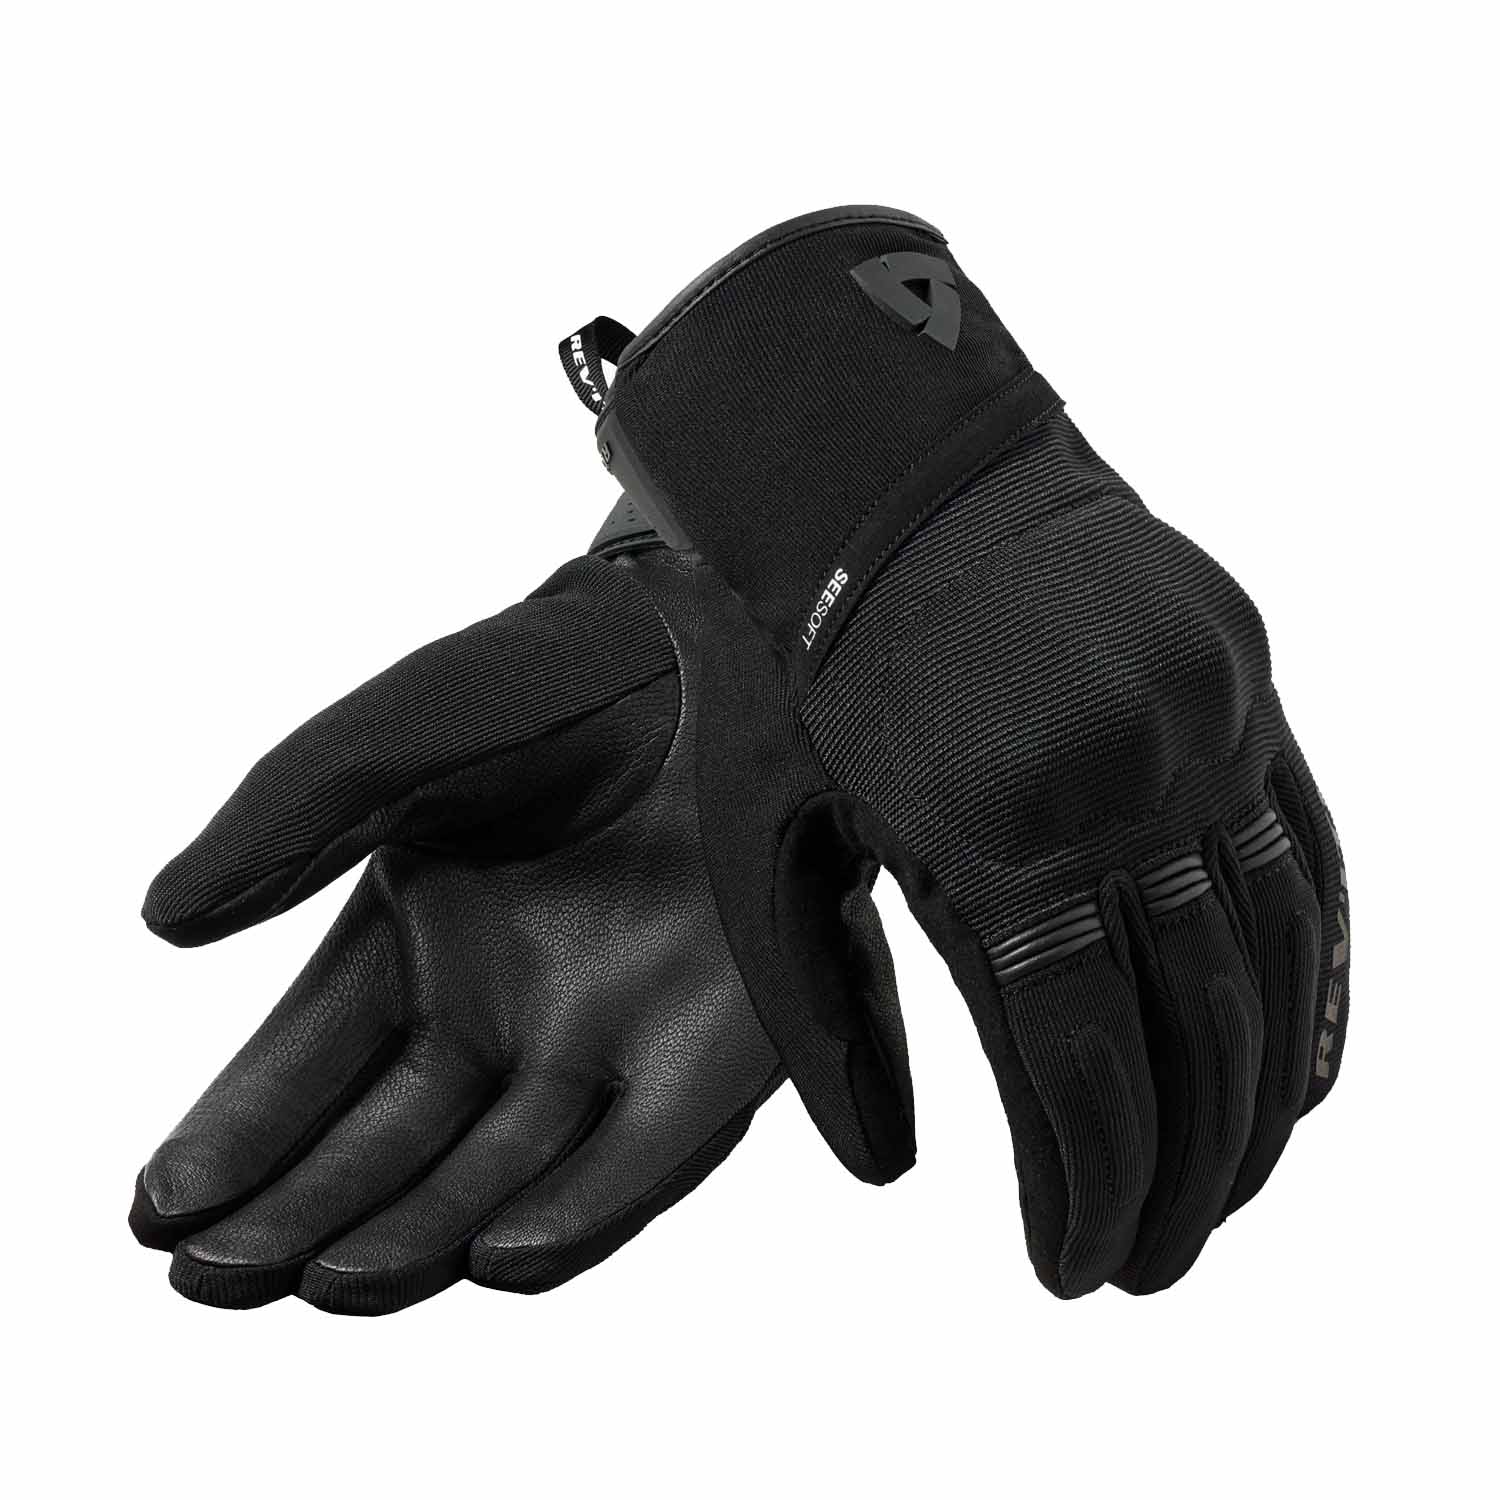 Image of REV'IT! Mosca 2 H2O Gloves Black Größe S